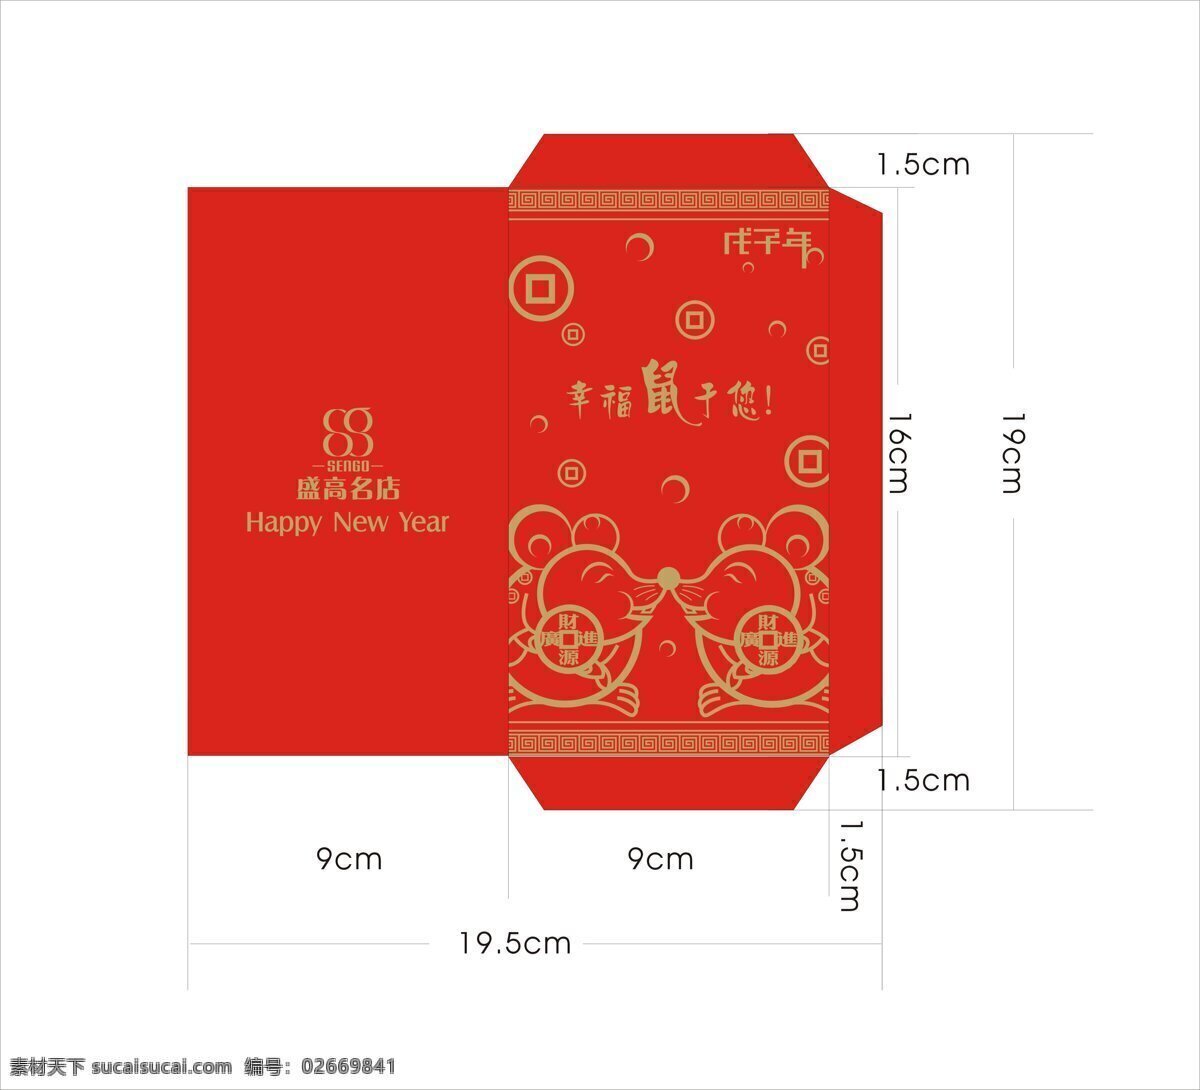 鼠年 红包 传统文化 设计图库 文化艺术 设计素材 模板下载 鼠年红包 玉鼠生财 psd源文件 请柬请帖